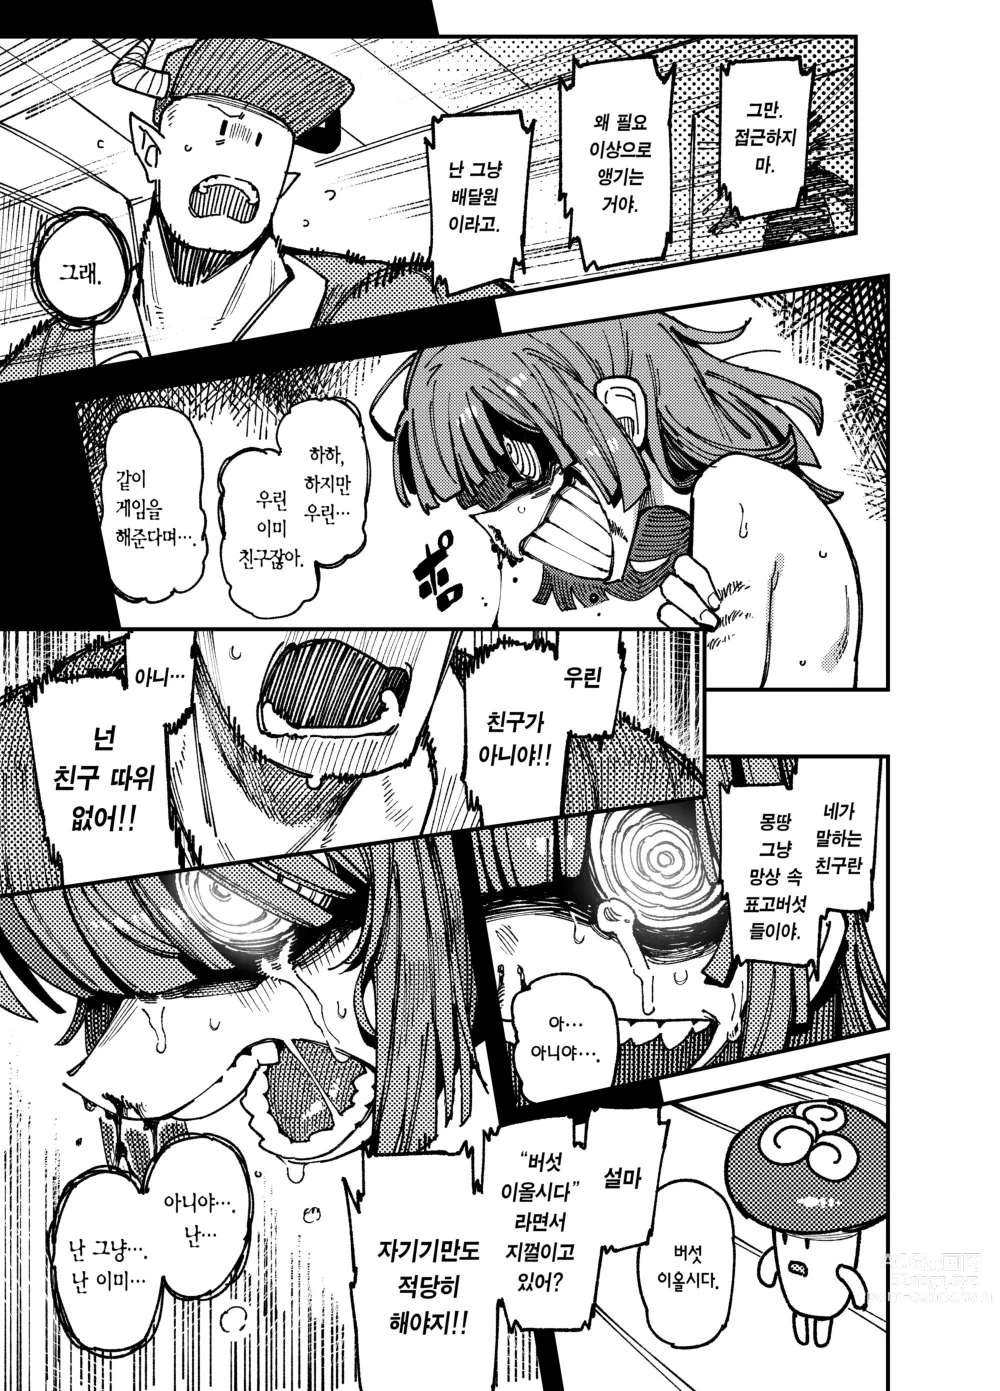 Page 51 of doujinshi 집이 너무 습해서 자란 환각을 유발하는 버섯을 잘못 먹고 발정이 나서 생긴 일들